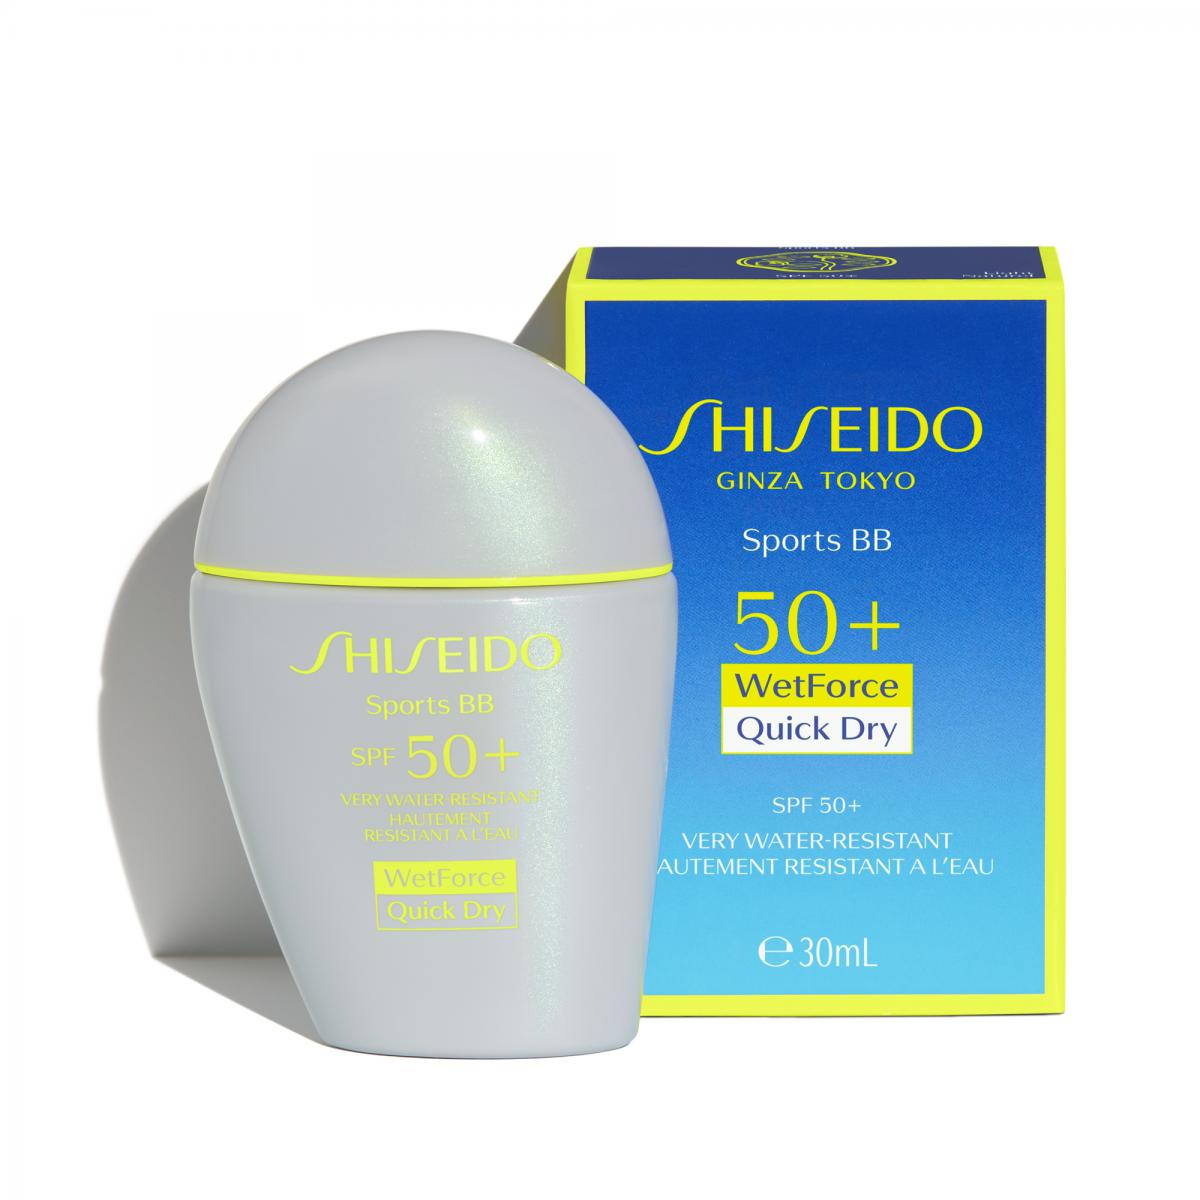 Crème Solaire Visage homme Shiseido